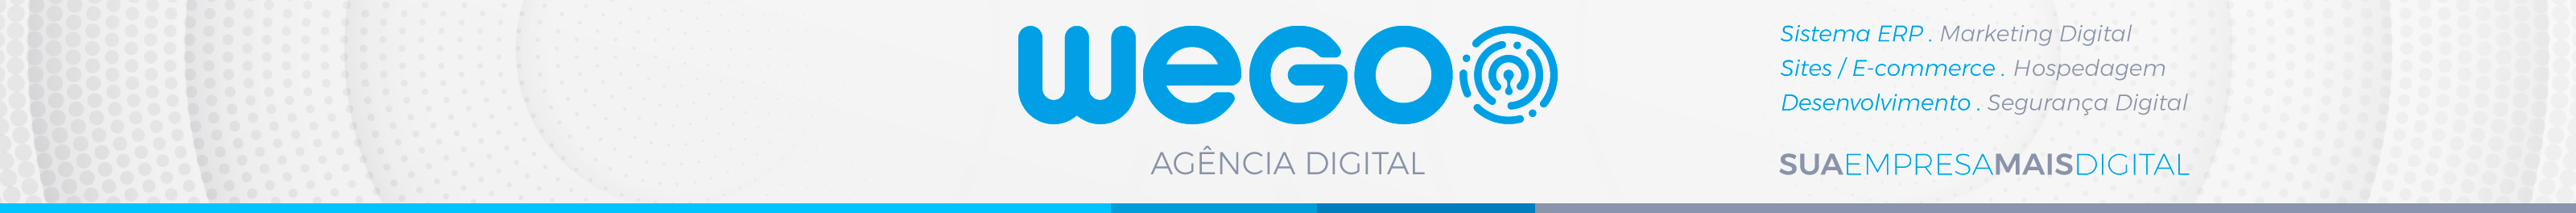 Wegoo Agência Digital's profile banner